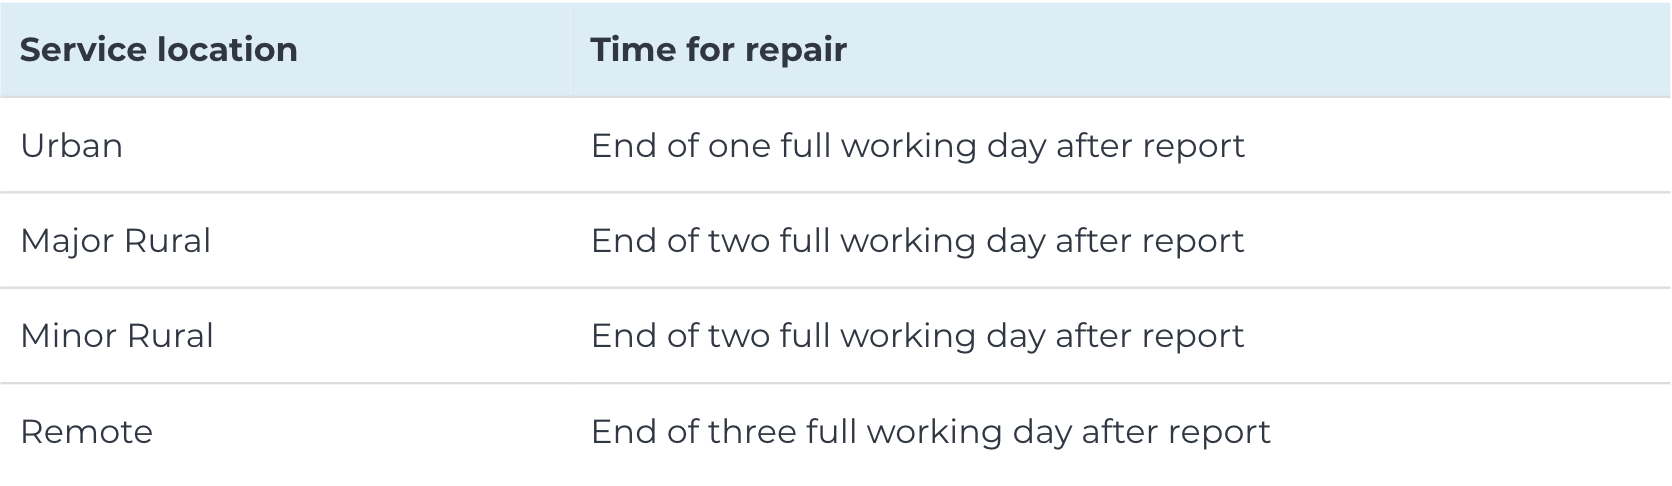 Repair Time Table